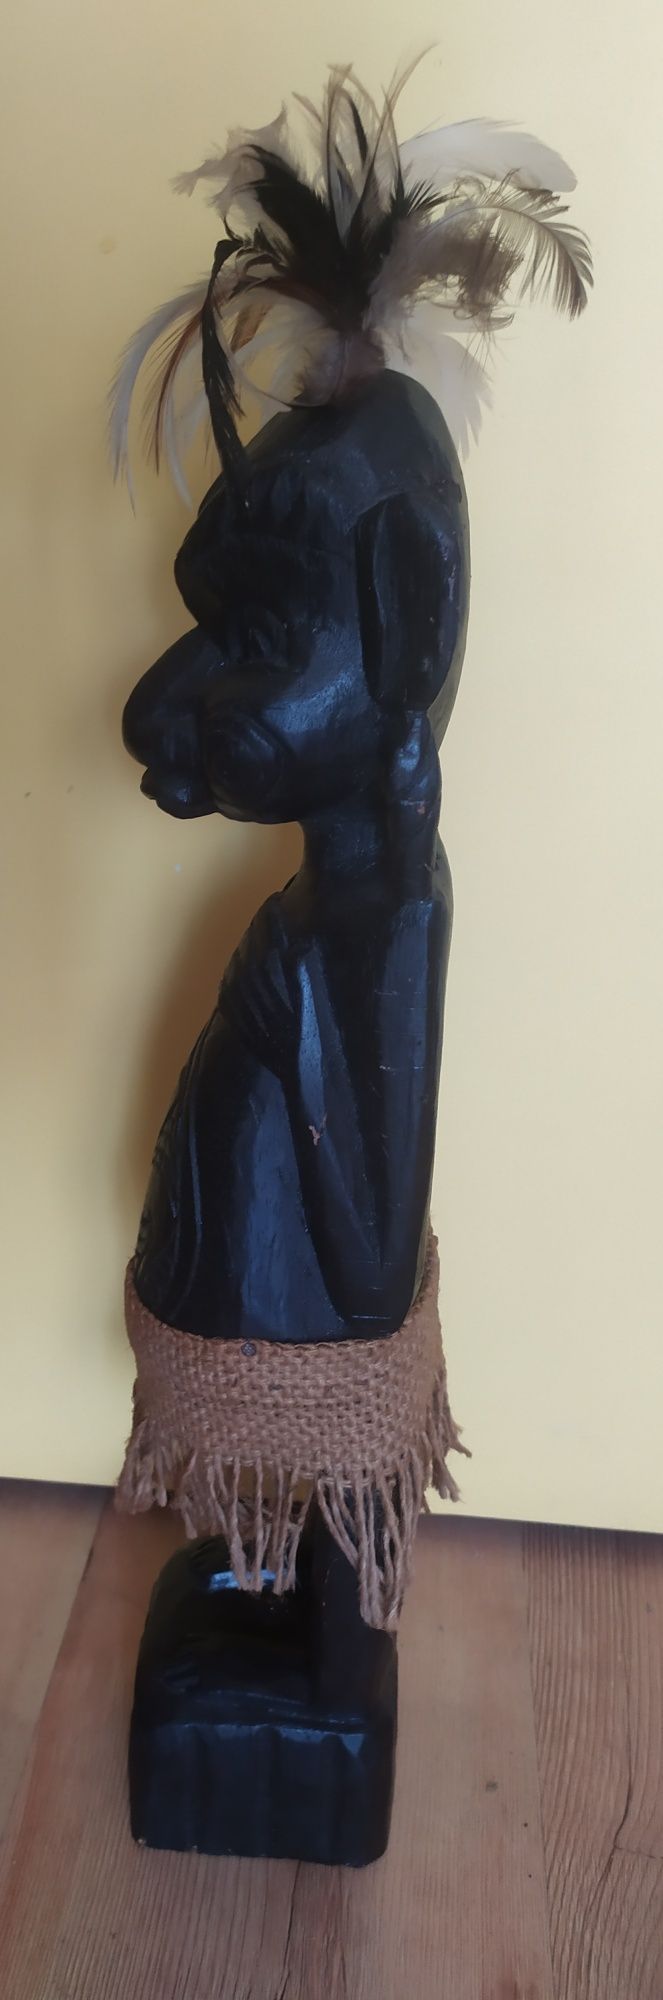 Rzeźba figurka drewniana na afrykański styl